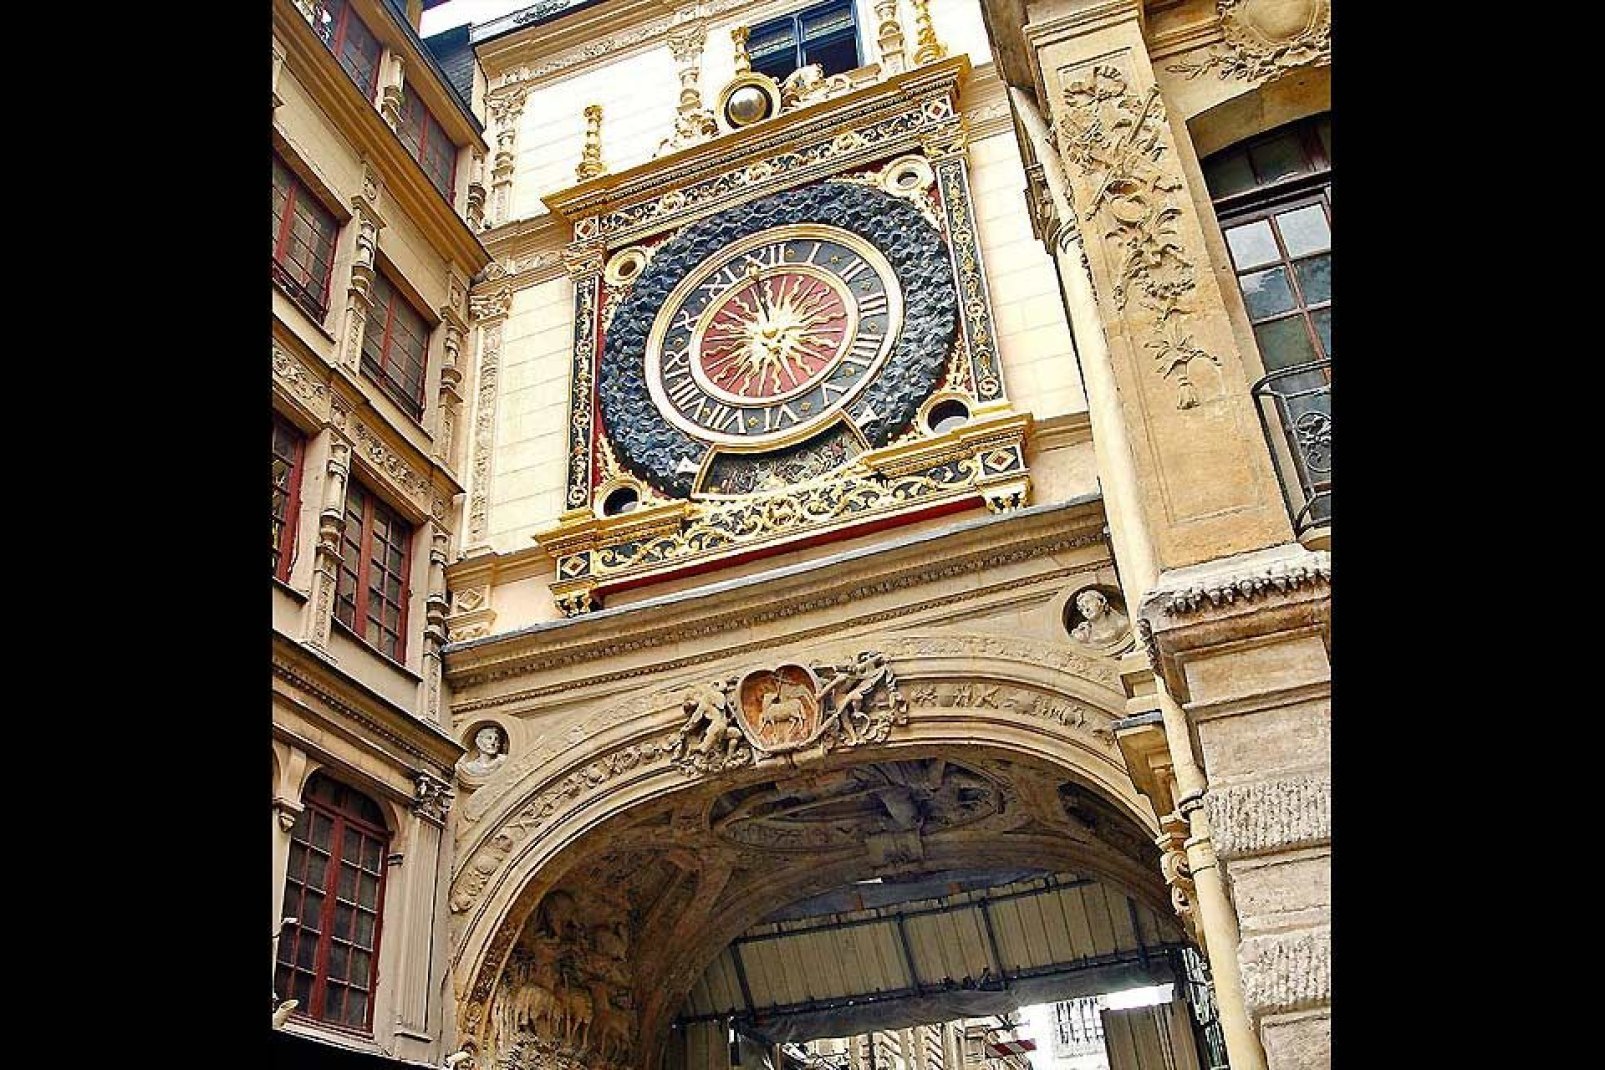 El movimiento del Gran Reloj se creó en 1389, lo que lo convierte en uno de los mecanismos más antiguos de Francia.